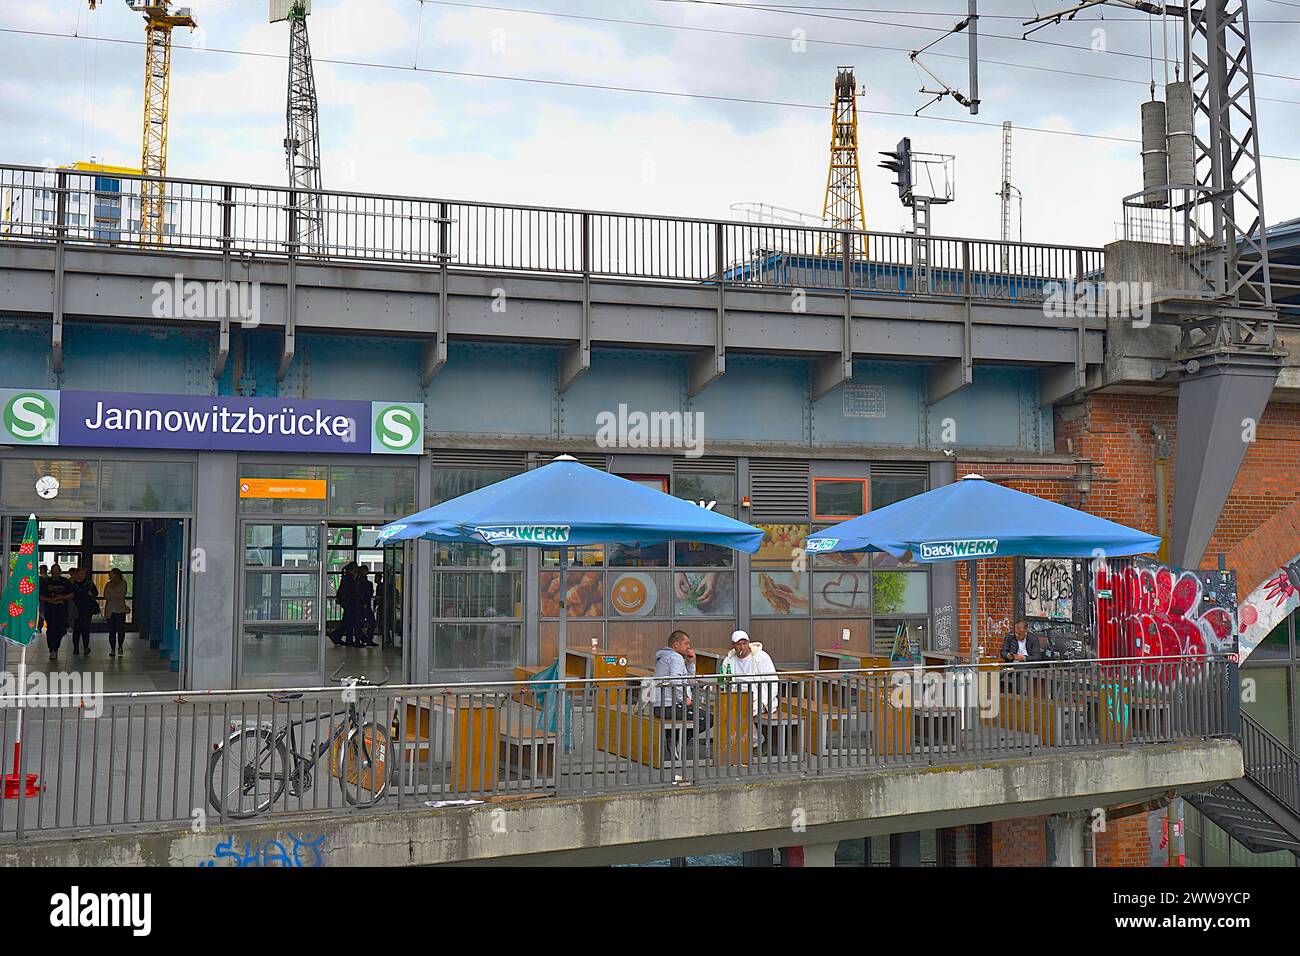 Una stazione ferroviaria locale della S bahn chiamata Jannowitzbrücke, che vanta caffetterie e chioschi con posti all'aperto, a Berlino, Germania Foto Stock